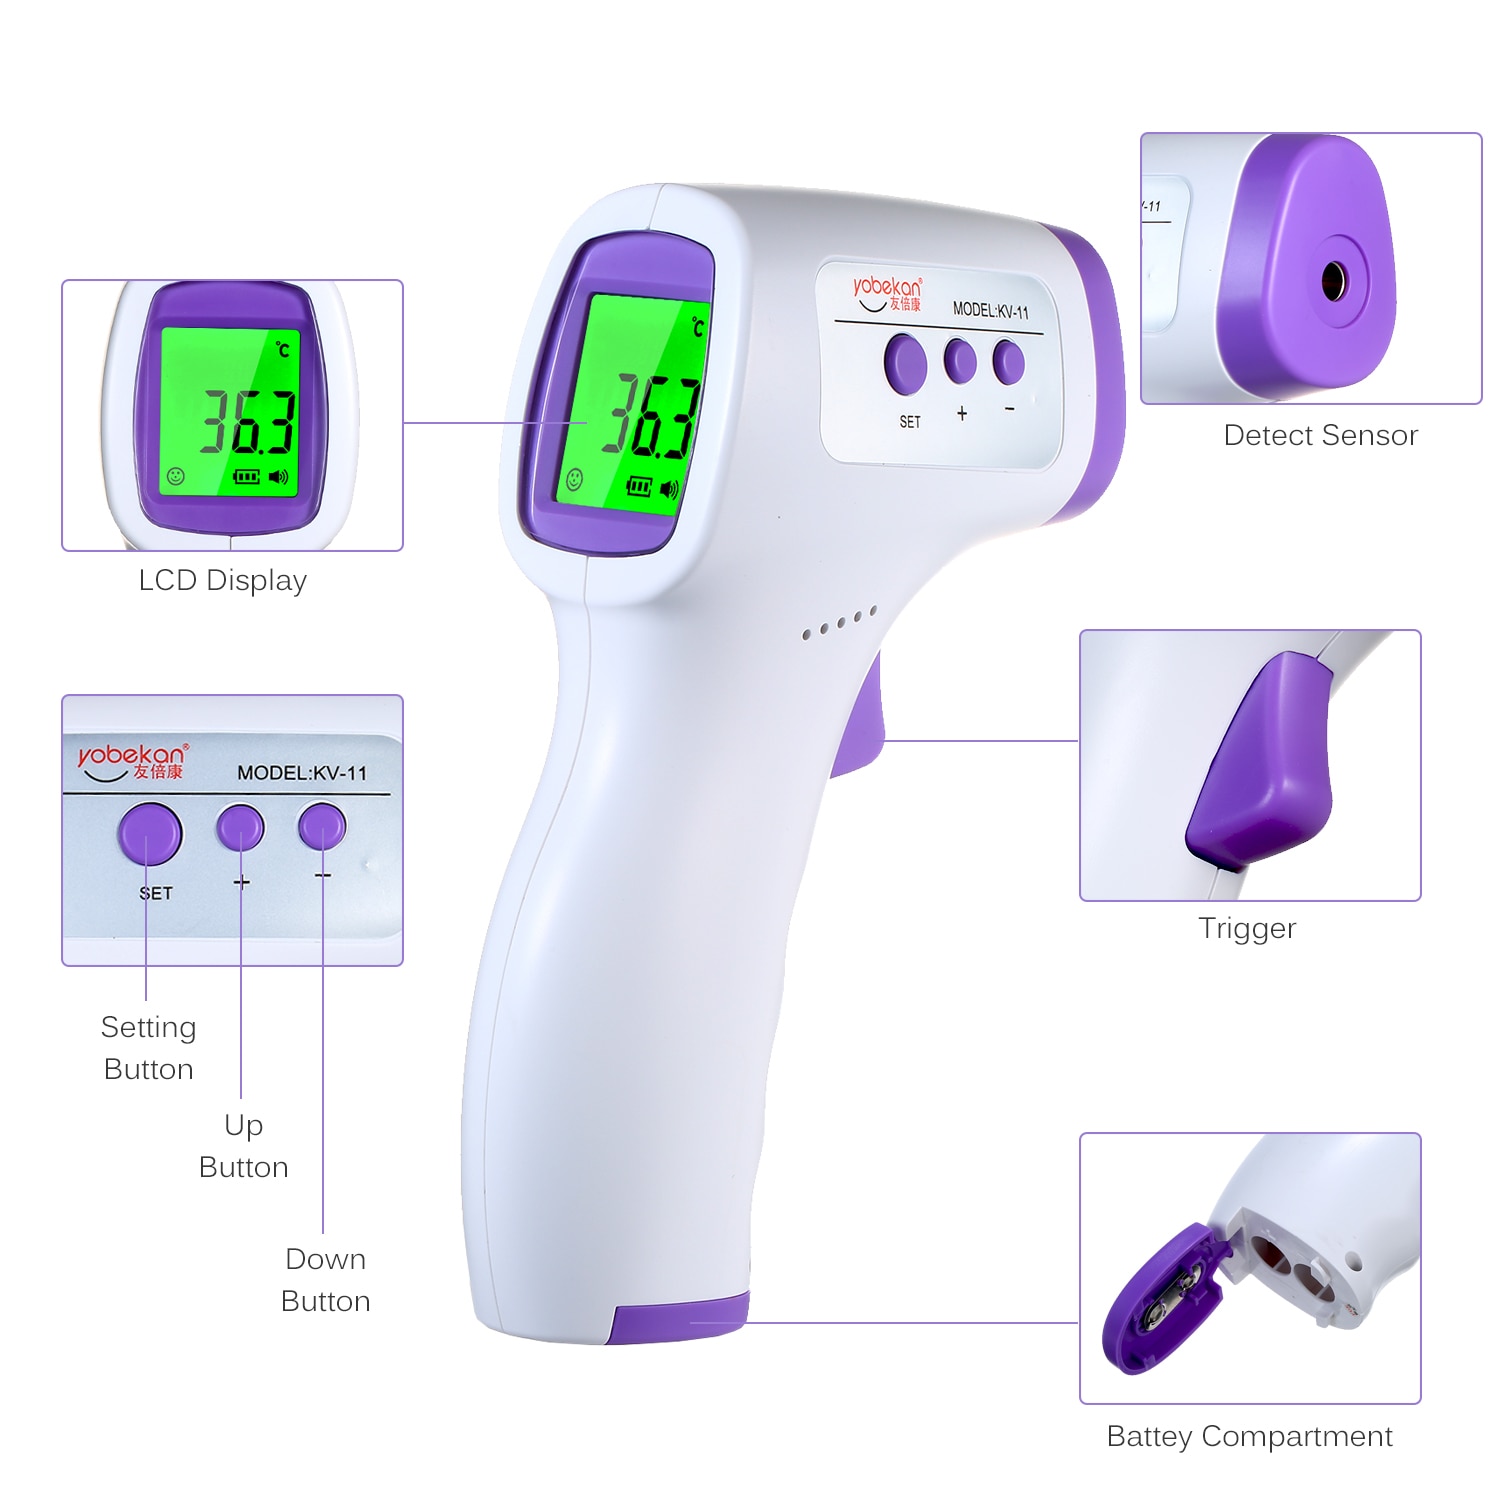 Infrarød pande berøringsfri digitalt termometer temperaturmåling til børn, børn og voksne hurtigt